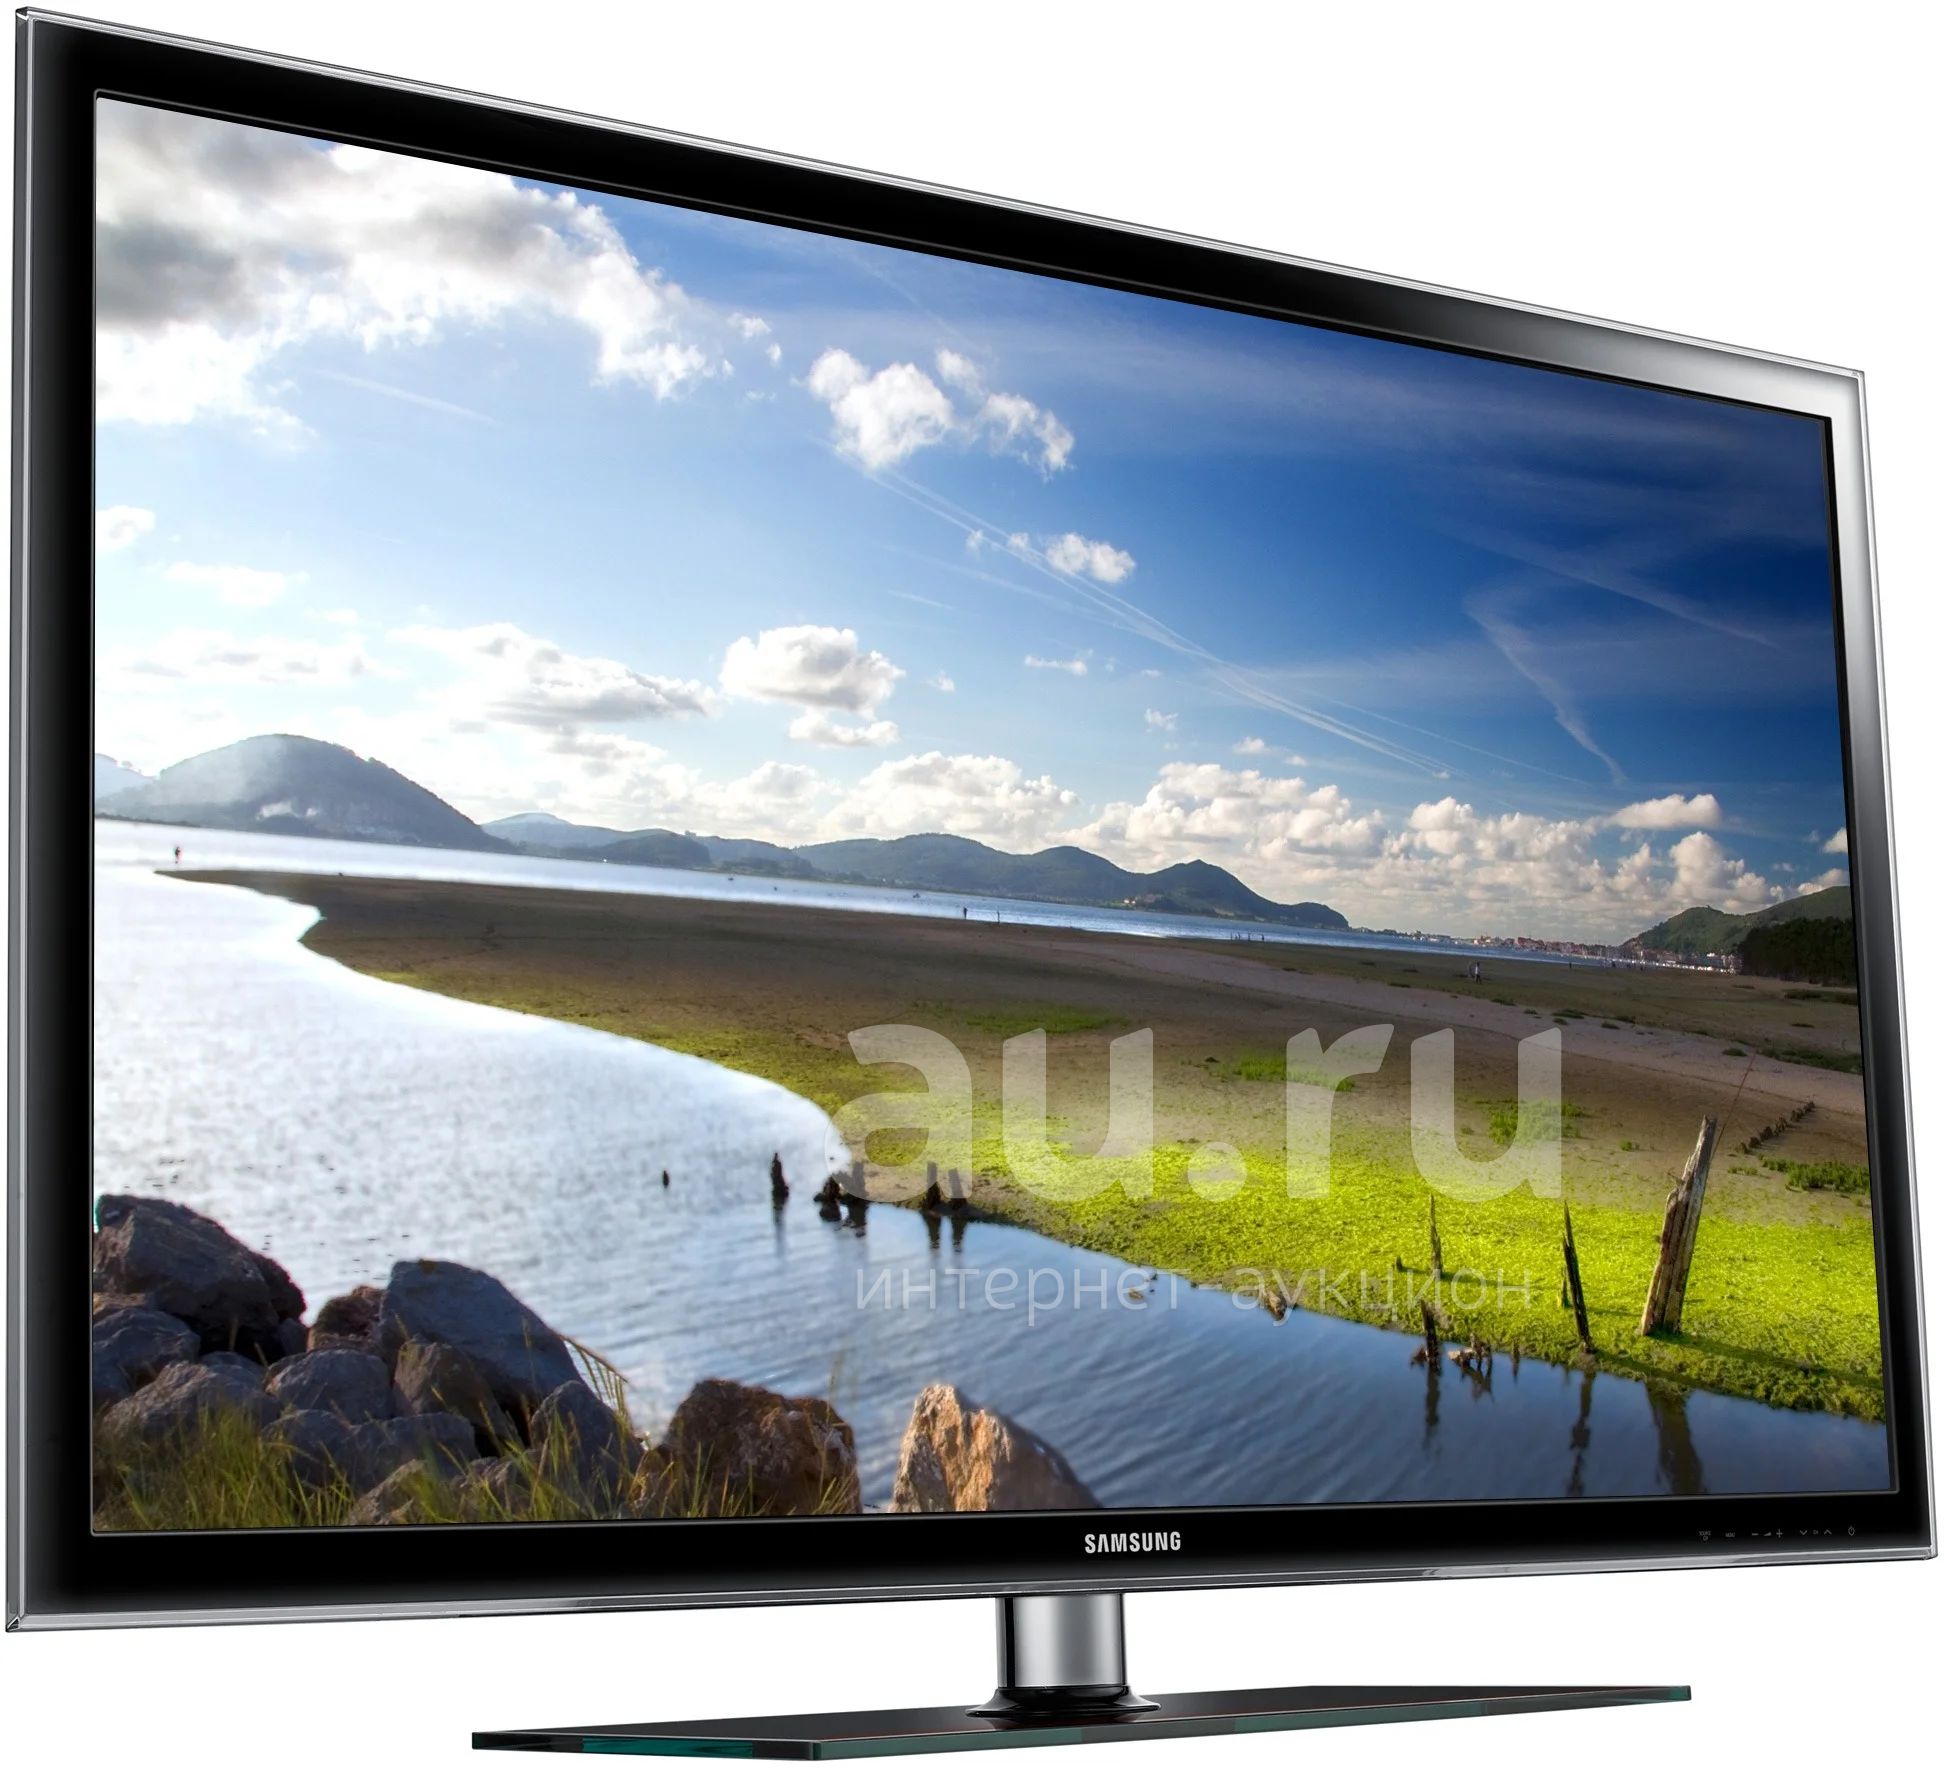 Купить телевизор в дзержинске. Samsung ue32h5000. Телевизор Samsung ue32d5000. Телевизор самсунг ue32d5000pw. Телевизор Samsung ue32d5000 32".